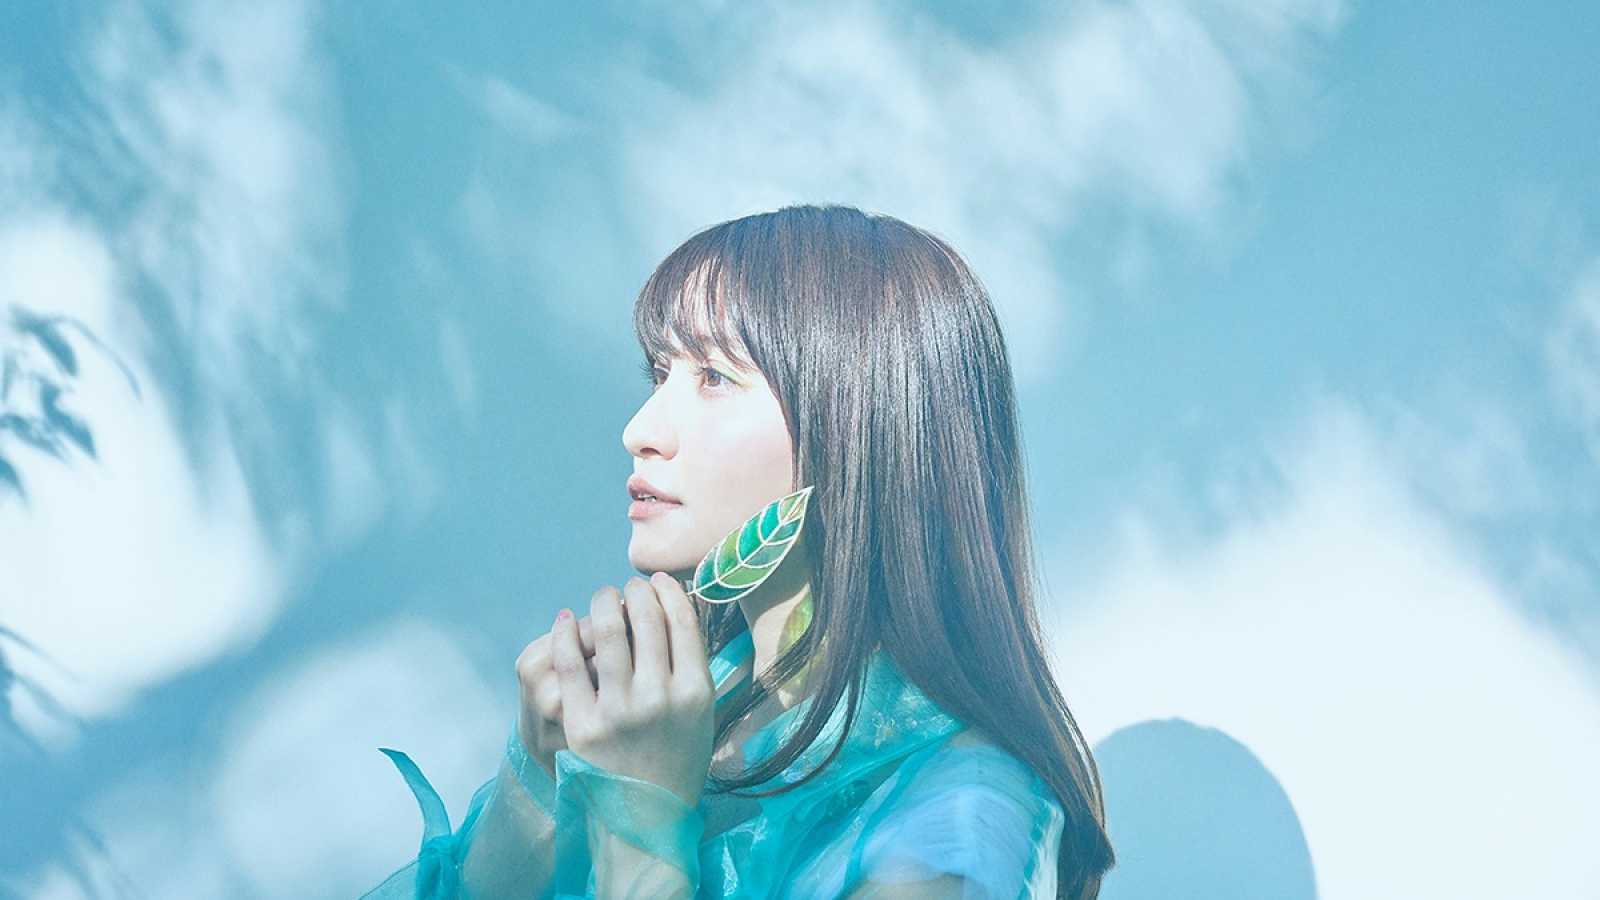 Nowy album Megumi Nakajimy © FlyingDog, Inc. All rights reserved.